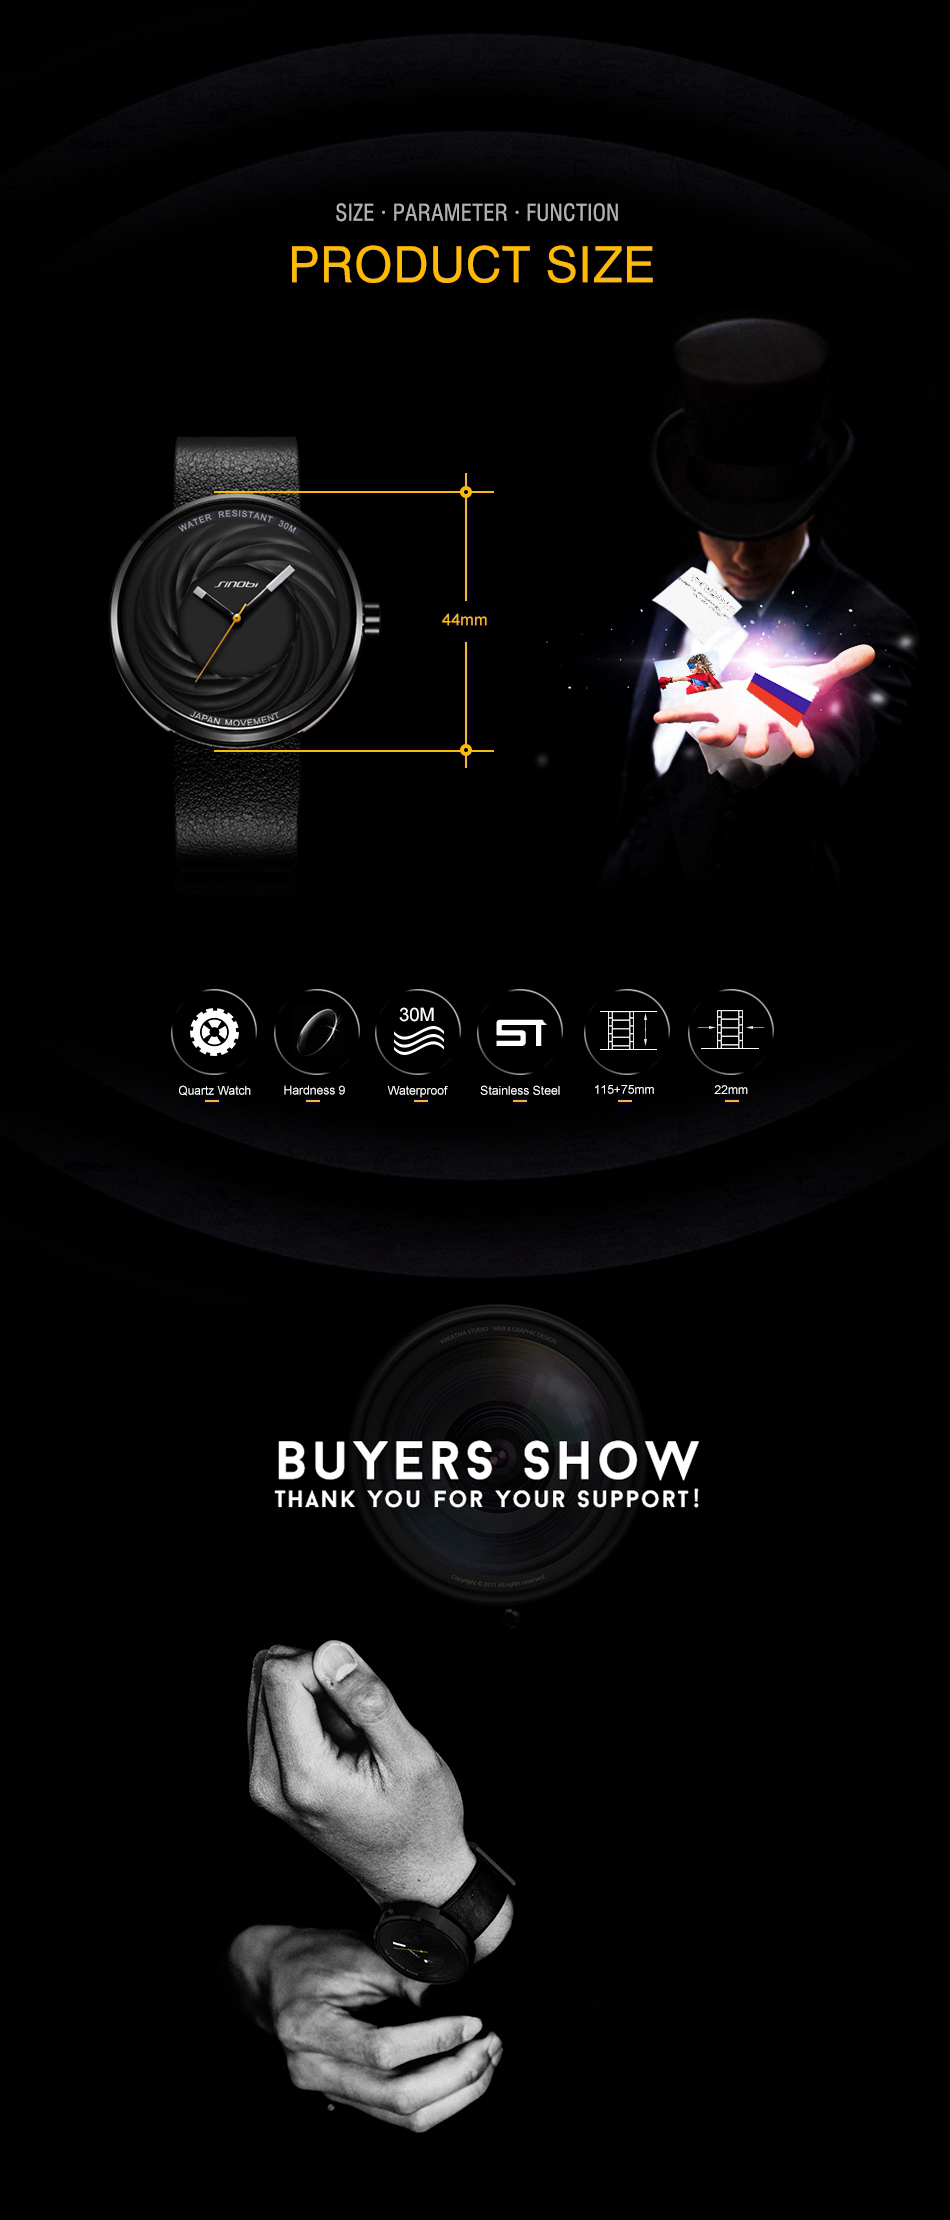 SINOBI-9683-Unisex-Fashion-Creative-Watches-Genuine-Leather-Strap-Quartz-Wrist-Watch-1295444